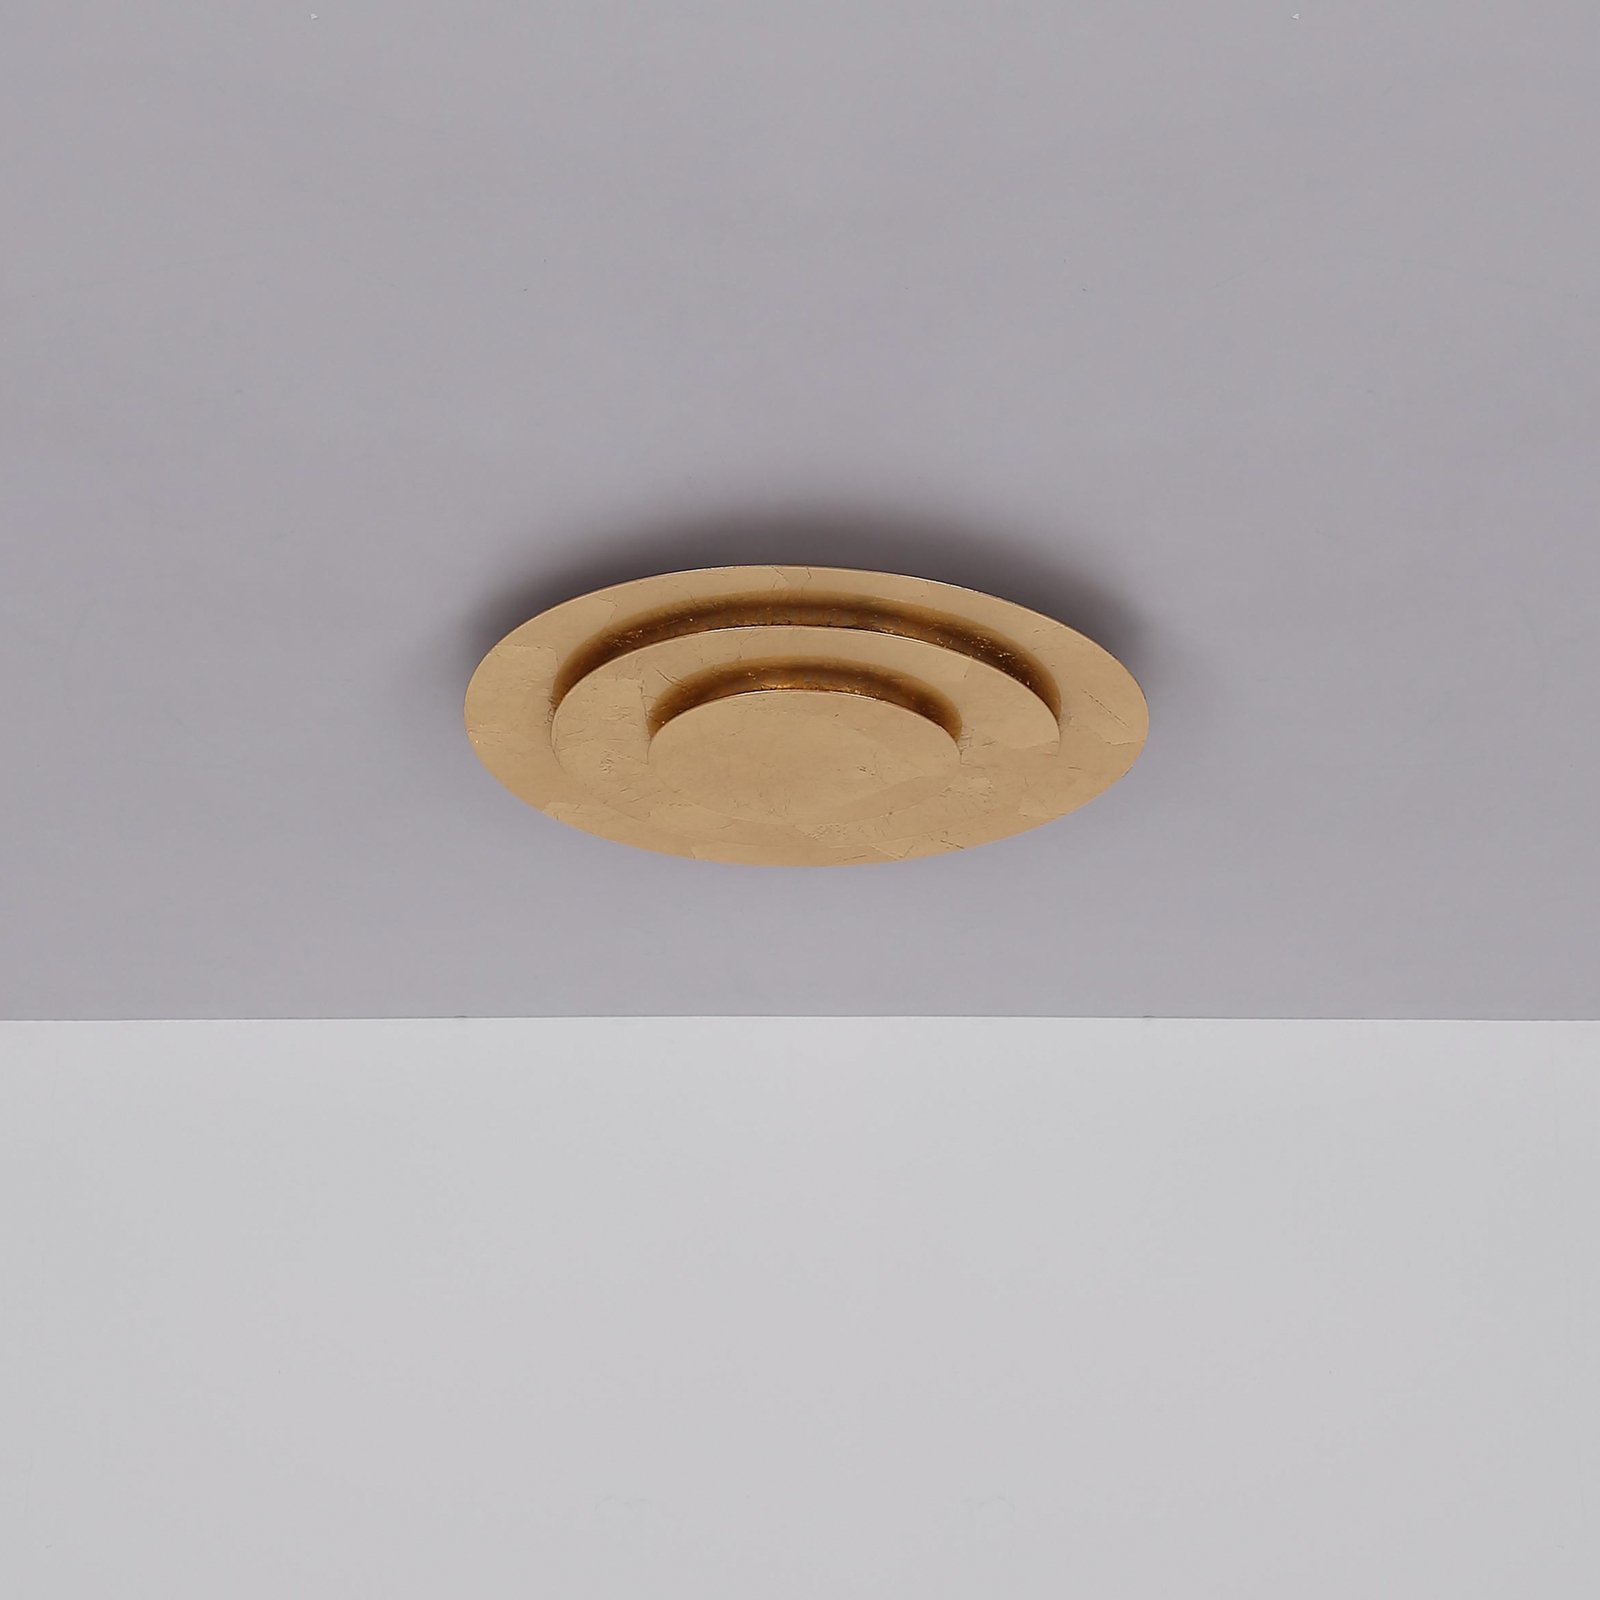 Heda LED ceiling light, Ø 35 cm, gold-coloured, metal